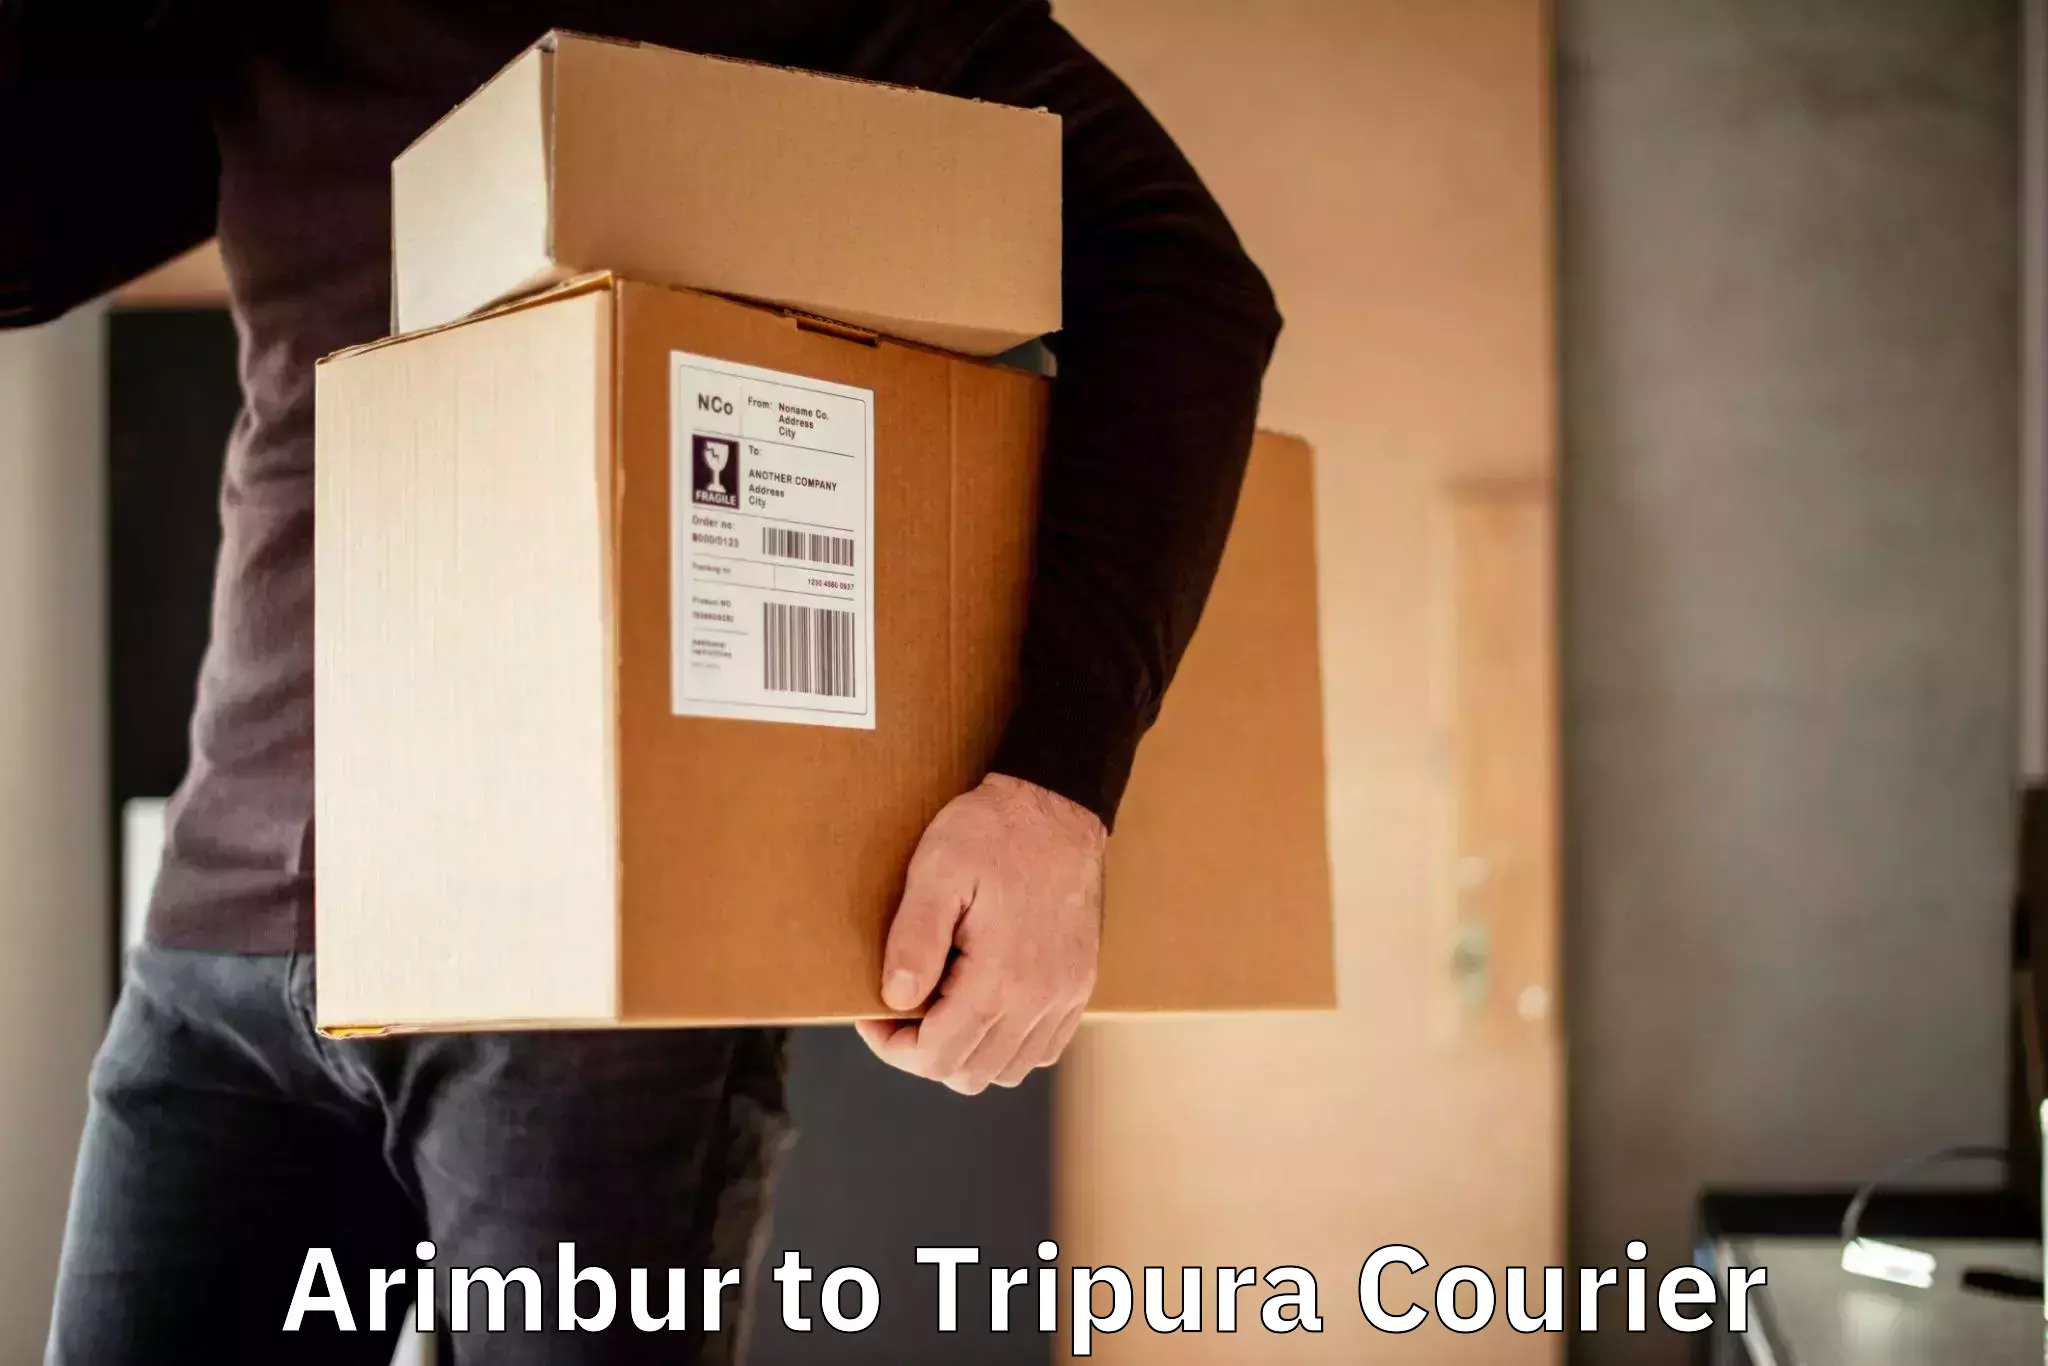 High-priority parcel service Arimbur to West Tripura